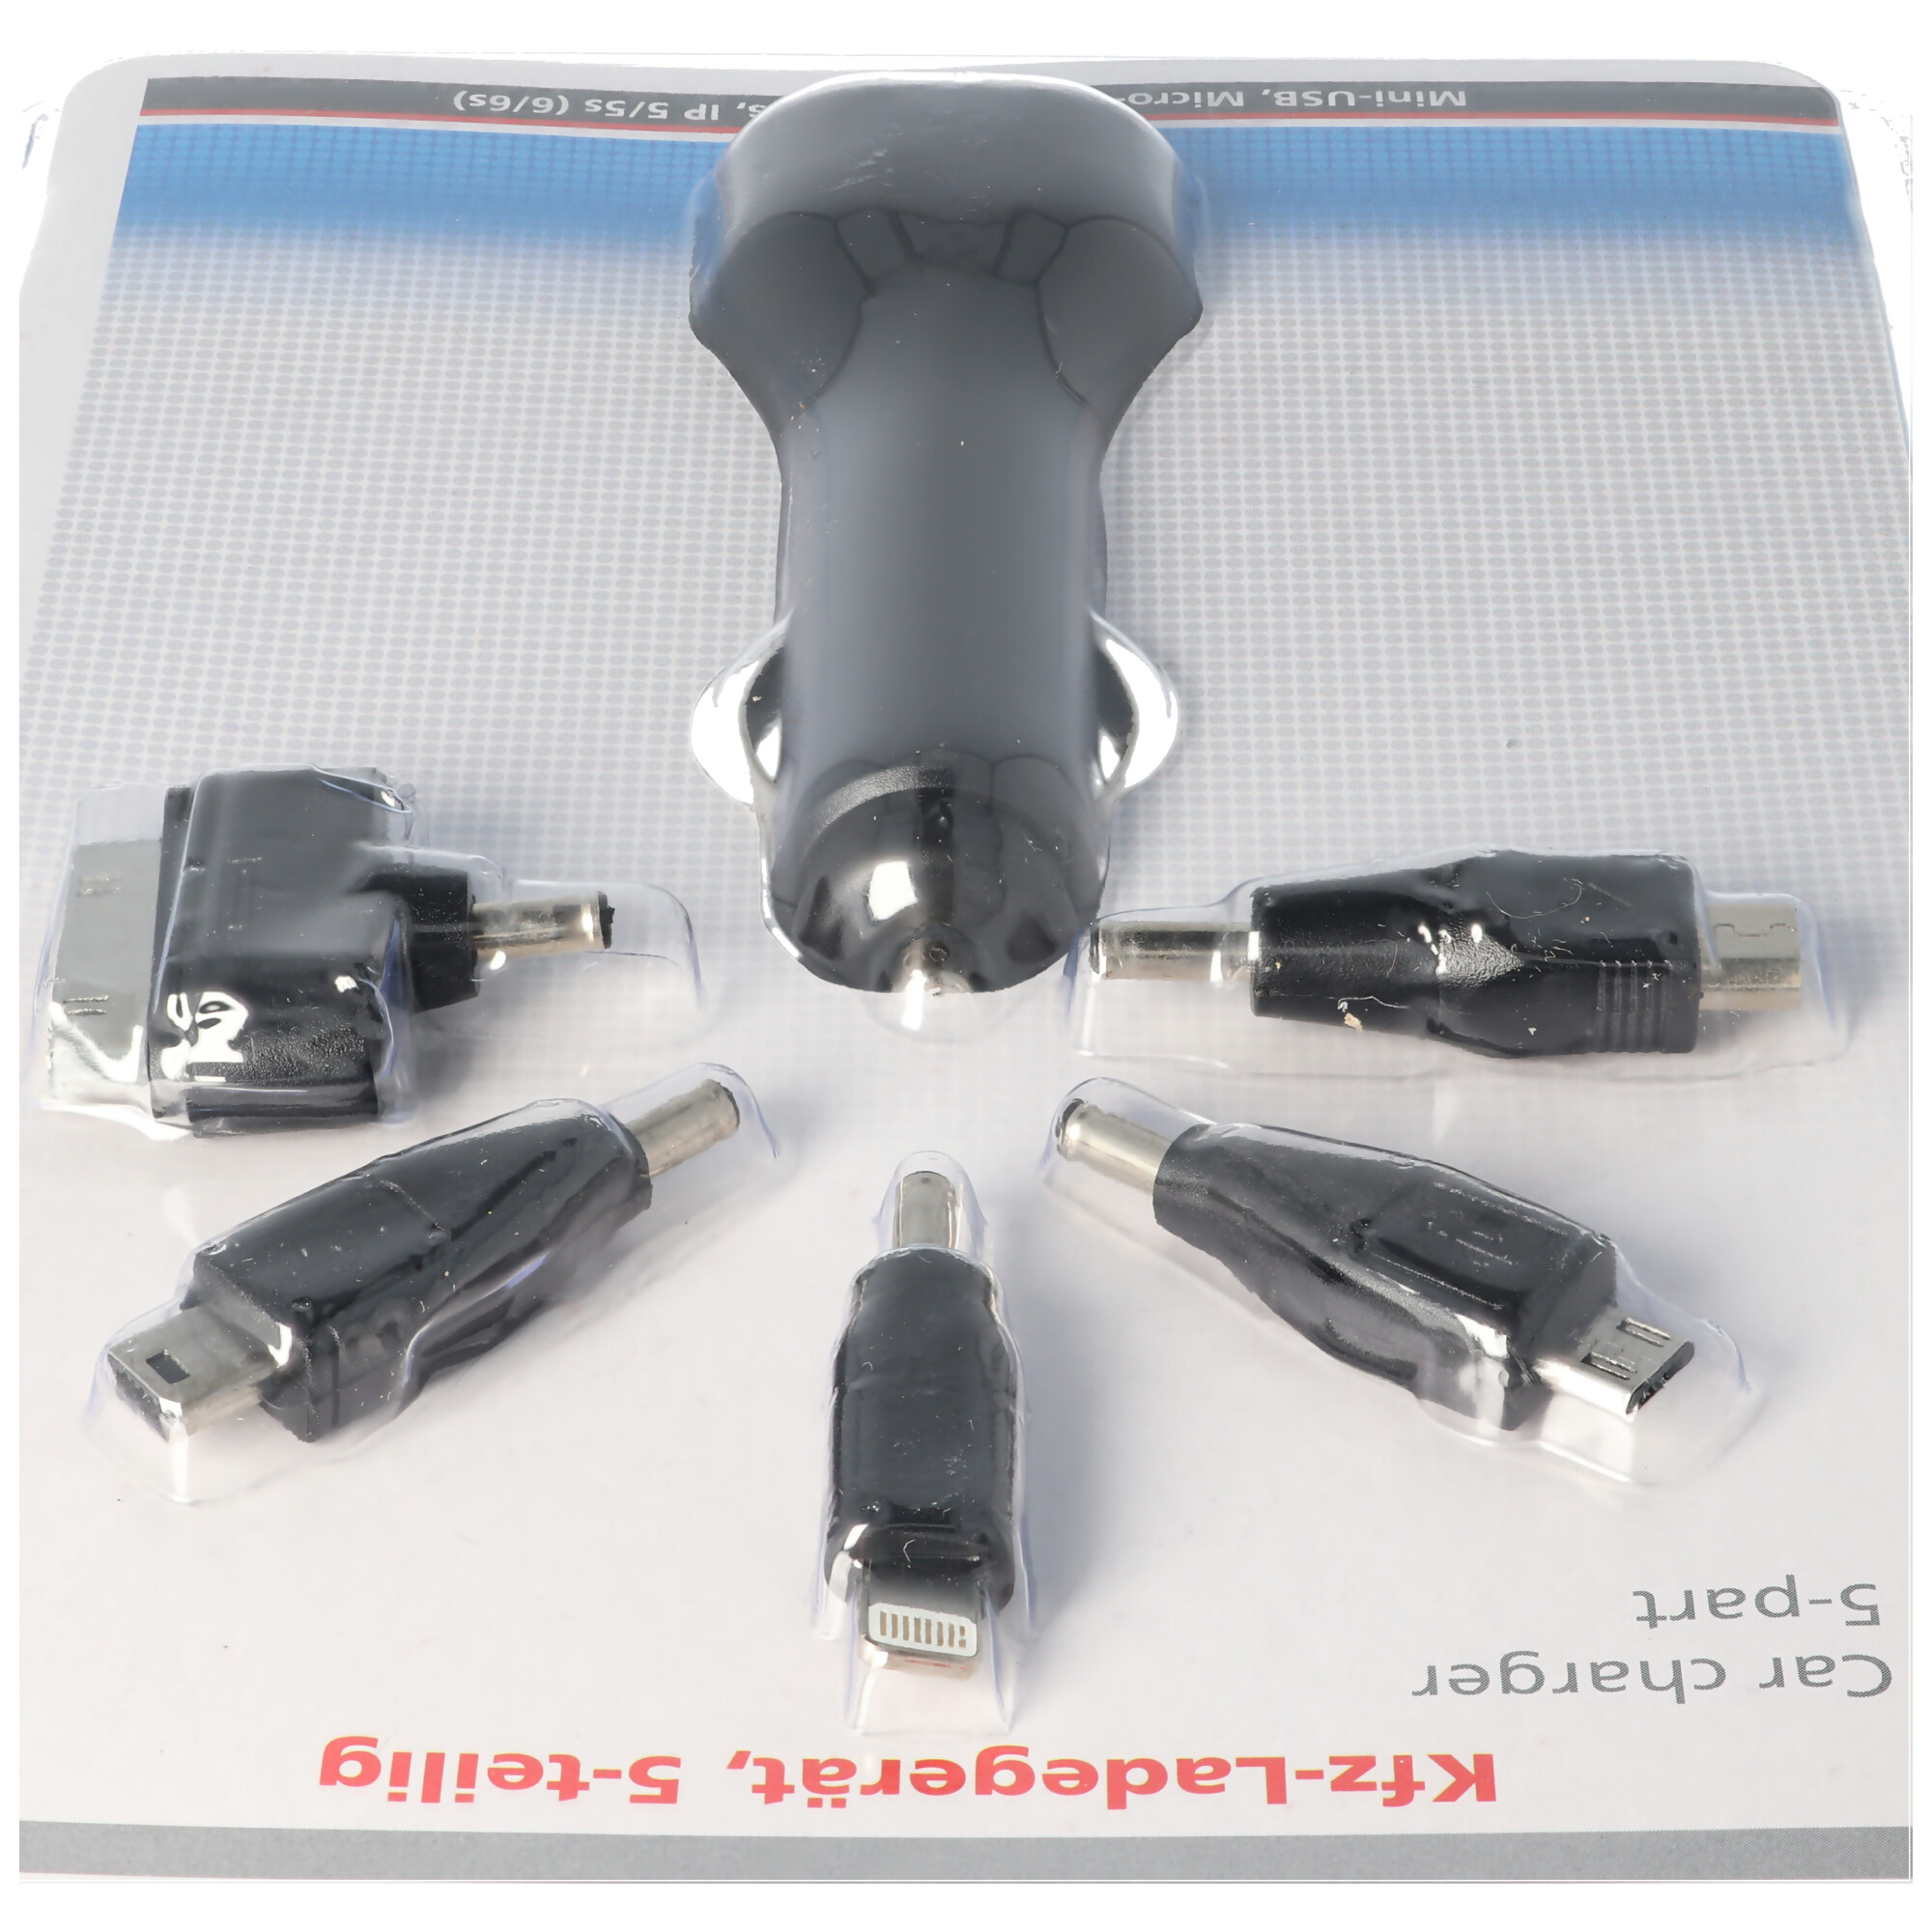 12 Volt USB Ladegerät 5-teilig mit Stecker Micro-USB, Mini-USB, für iPhone 3, 4, 5, 6 und NDS, Kabellänge 1,1 Meter